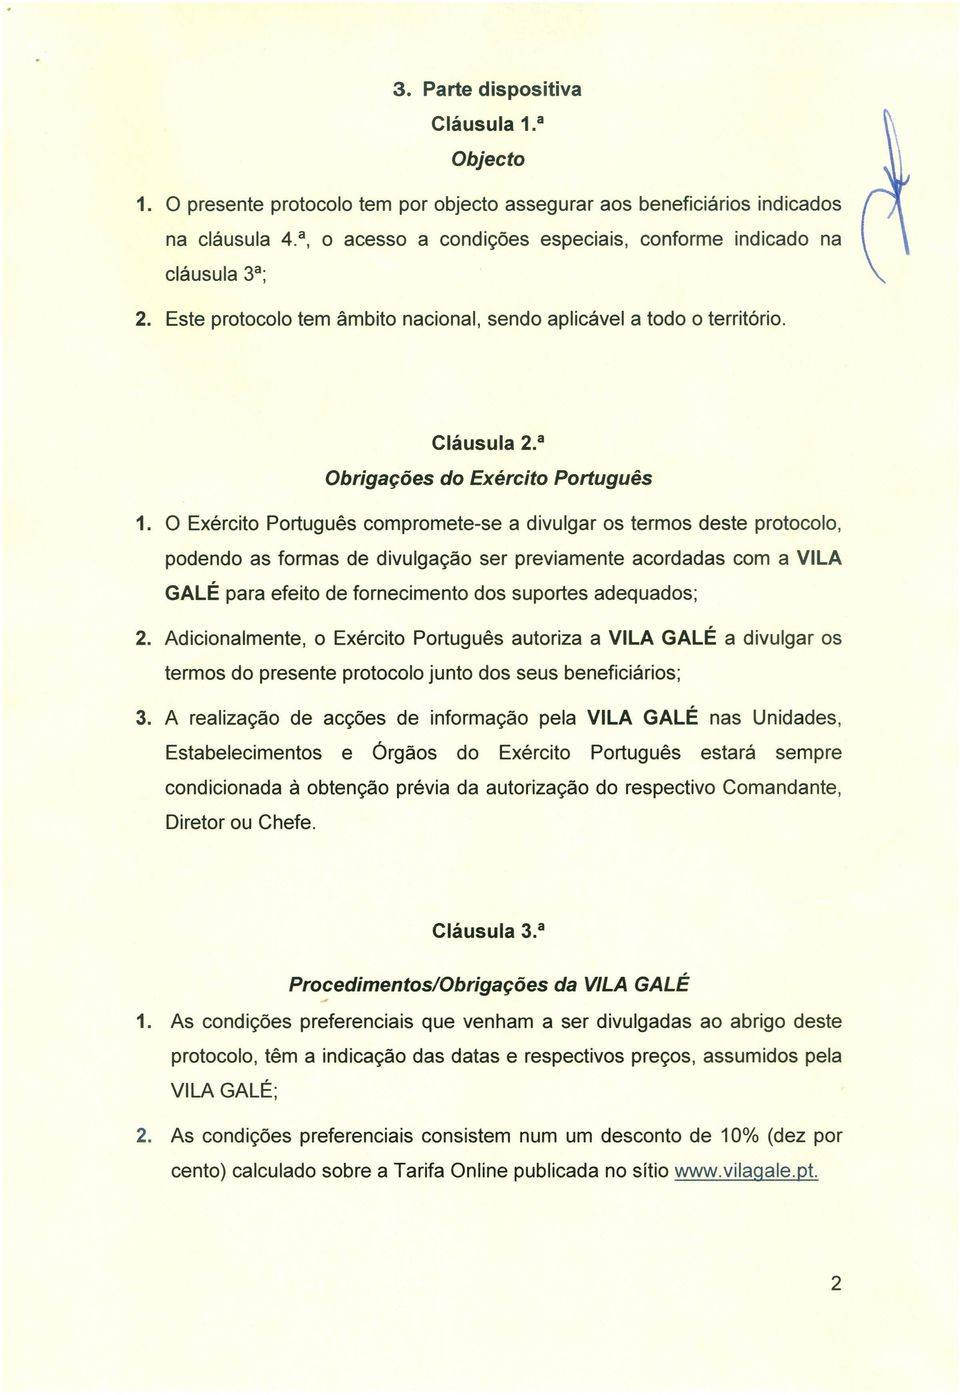 O Exército Português compromete-se a divulgar os termos deste protocolo, podendo as formas de divulgação ser previamente acordadas com a VILA GALÉ para efeito de fornecimento dos suportes adequados;